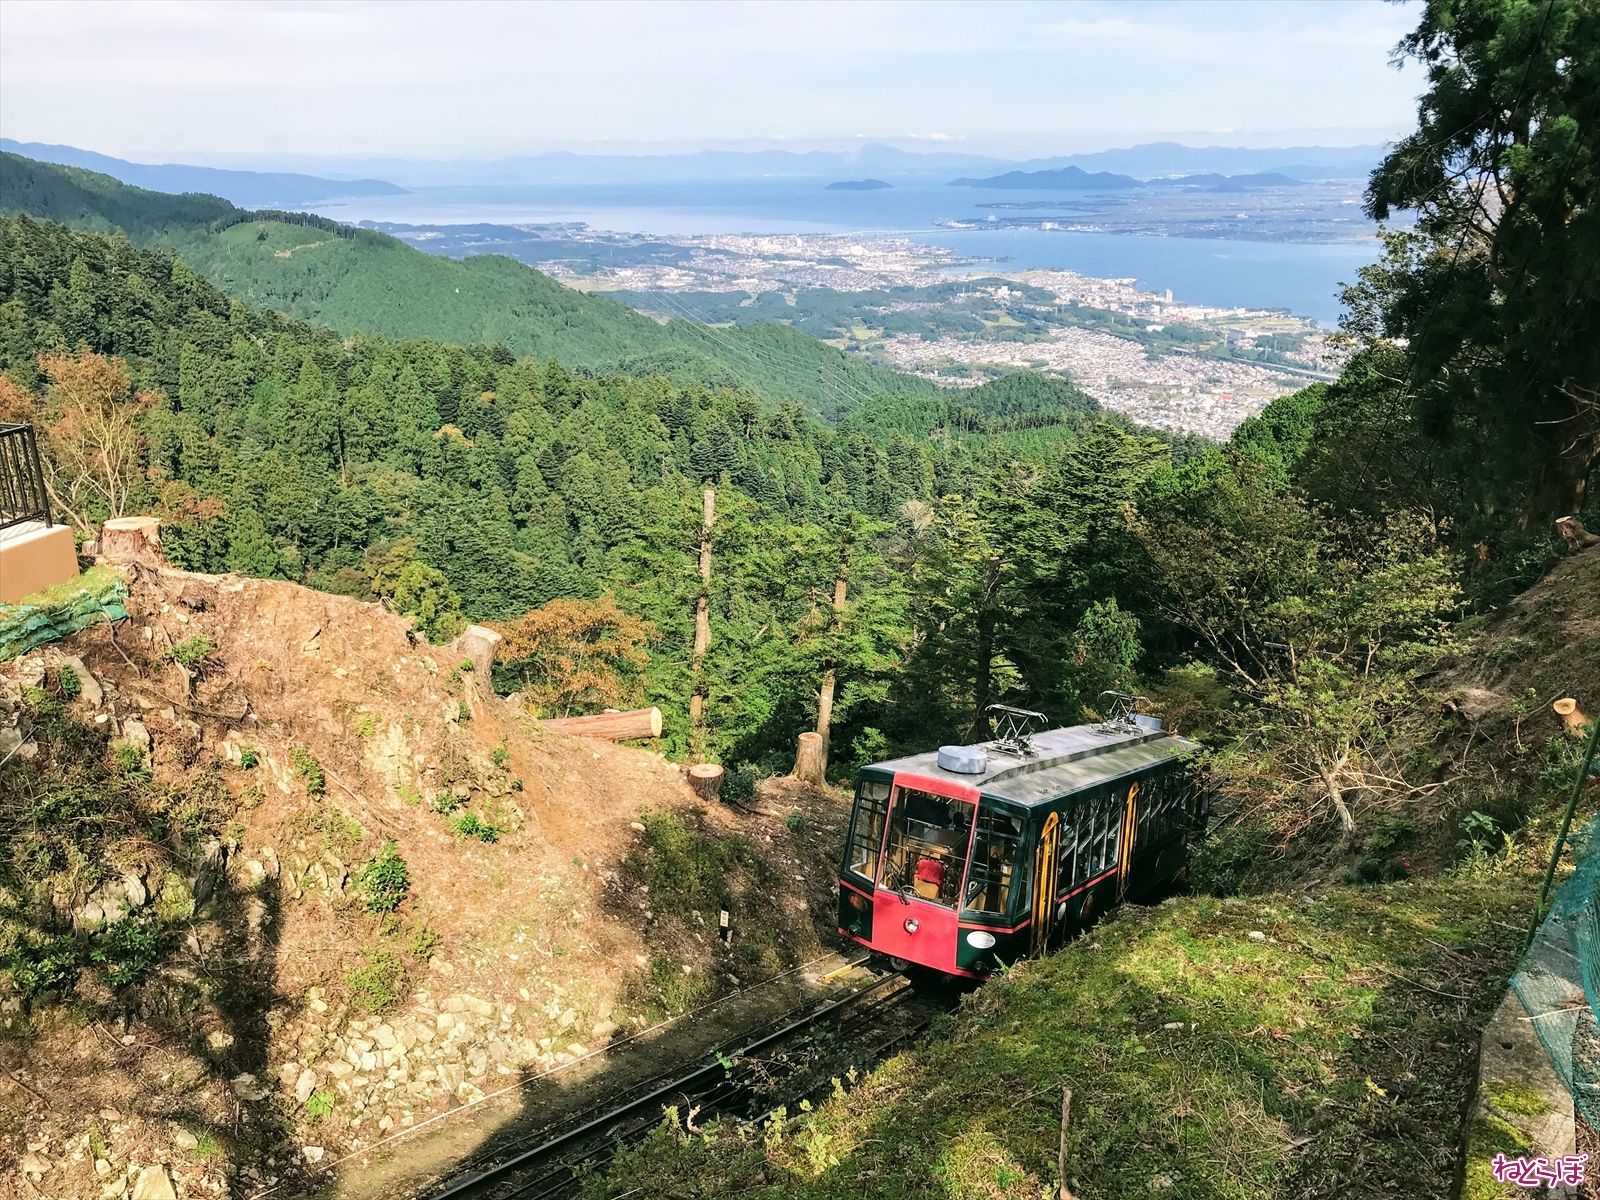 長さ日本一 比叡山 坂本ケーブル の絶景やいかに 二度びっくり 誰も降りない秘境駅では 写真42枚 1 5 ページ ねとらぼ